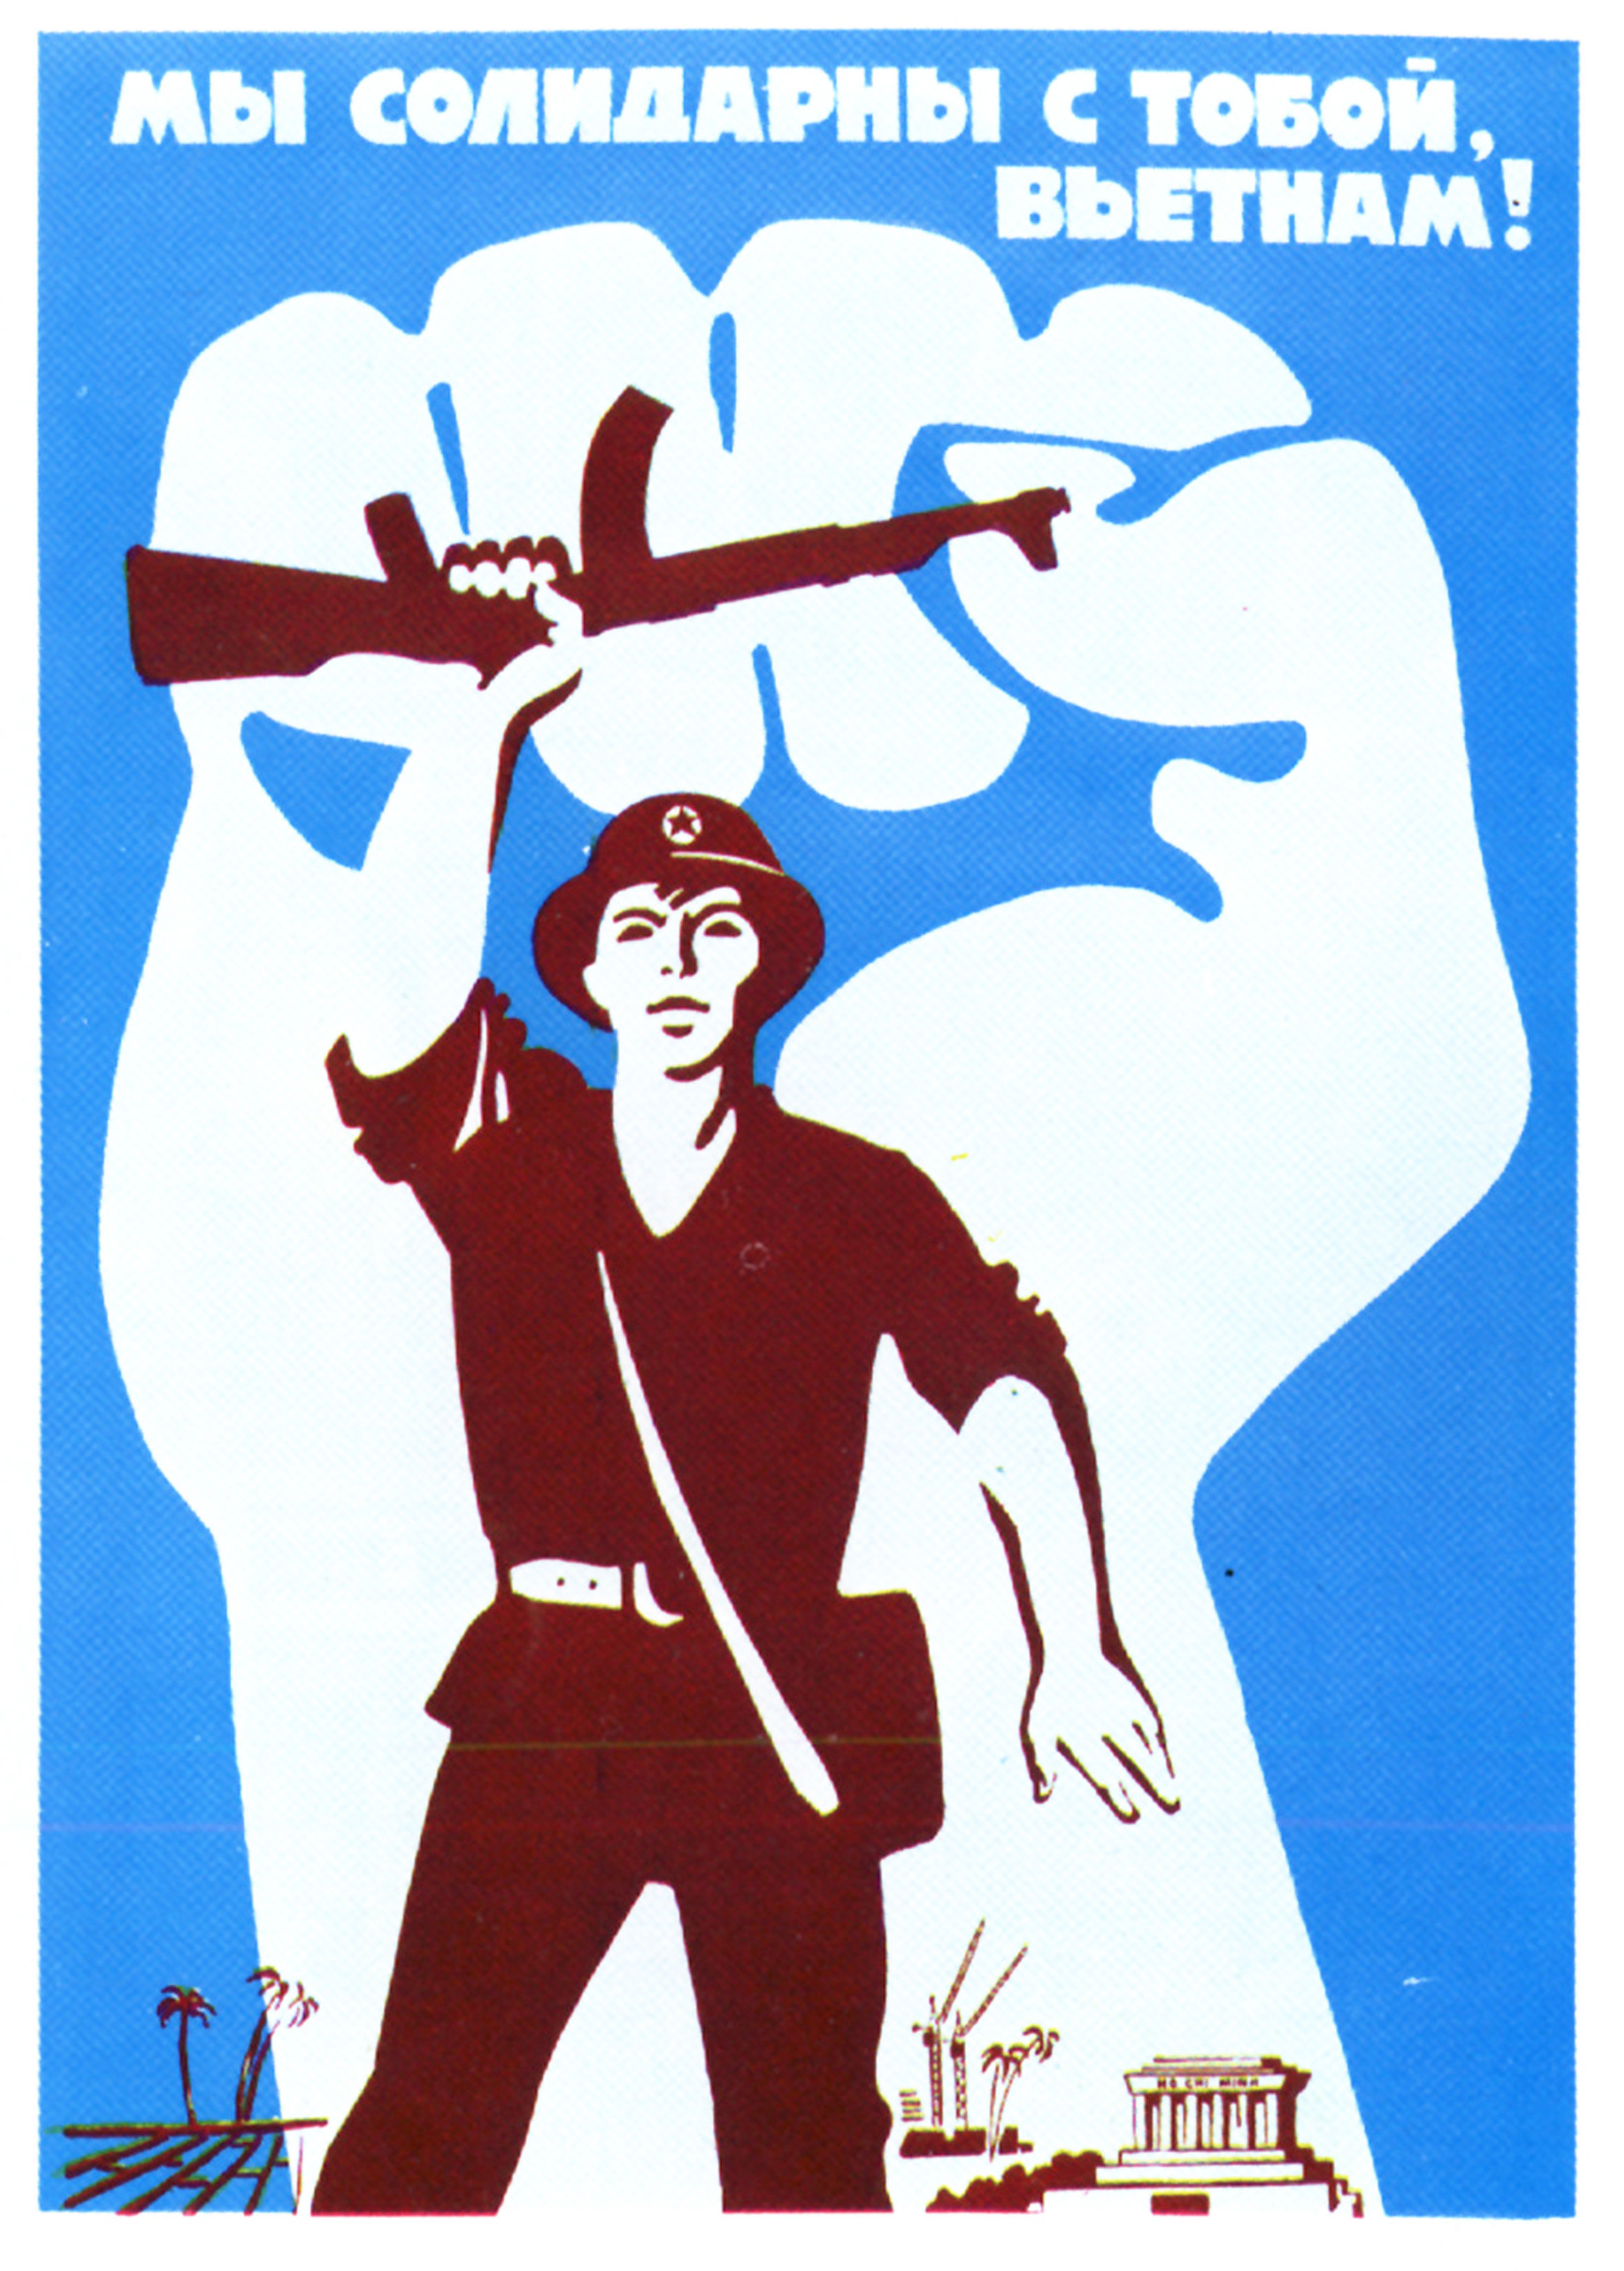 PROPAGANDA USSR COMMUNISM ANTI CAPITALIST SOVIET LARGE POSTER ART PRINT BB2749A 